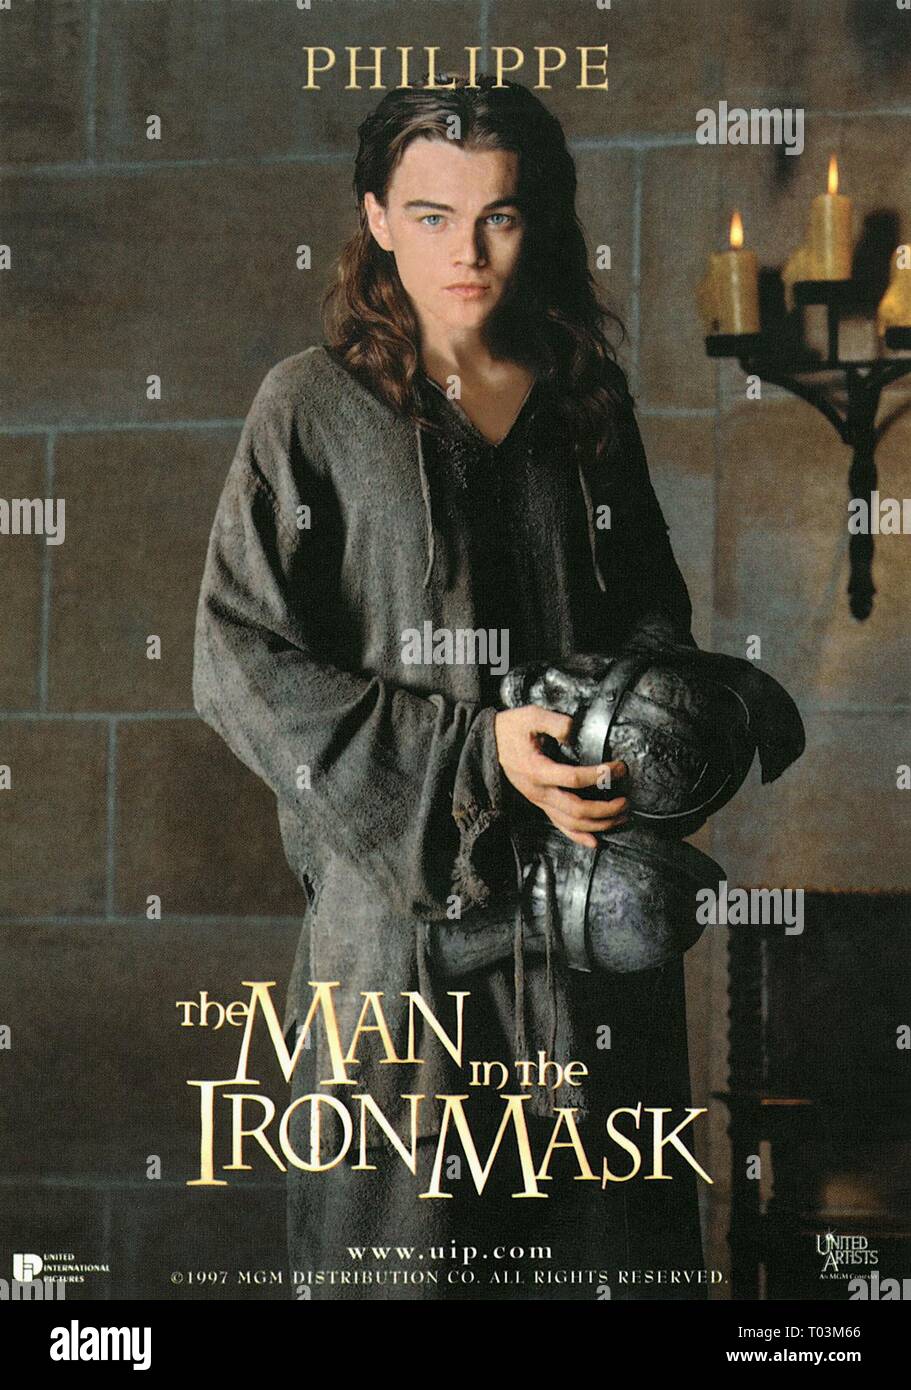 LEONARDO DICAPRIO, der Mann in der eisernen Maske, 1998 Stockfotografie -  Alamy